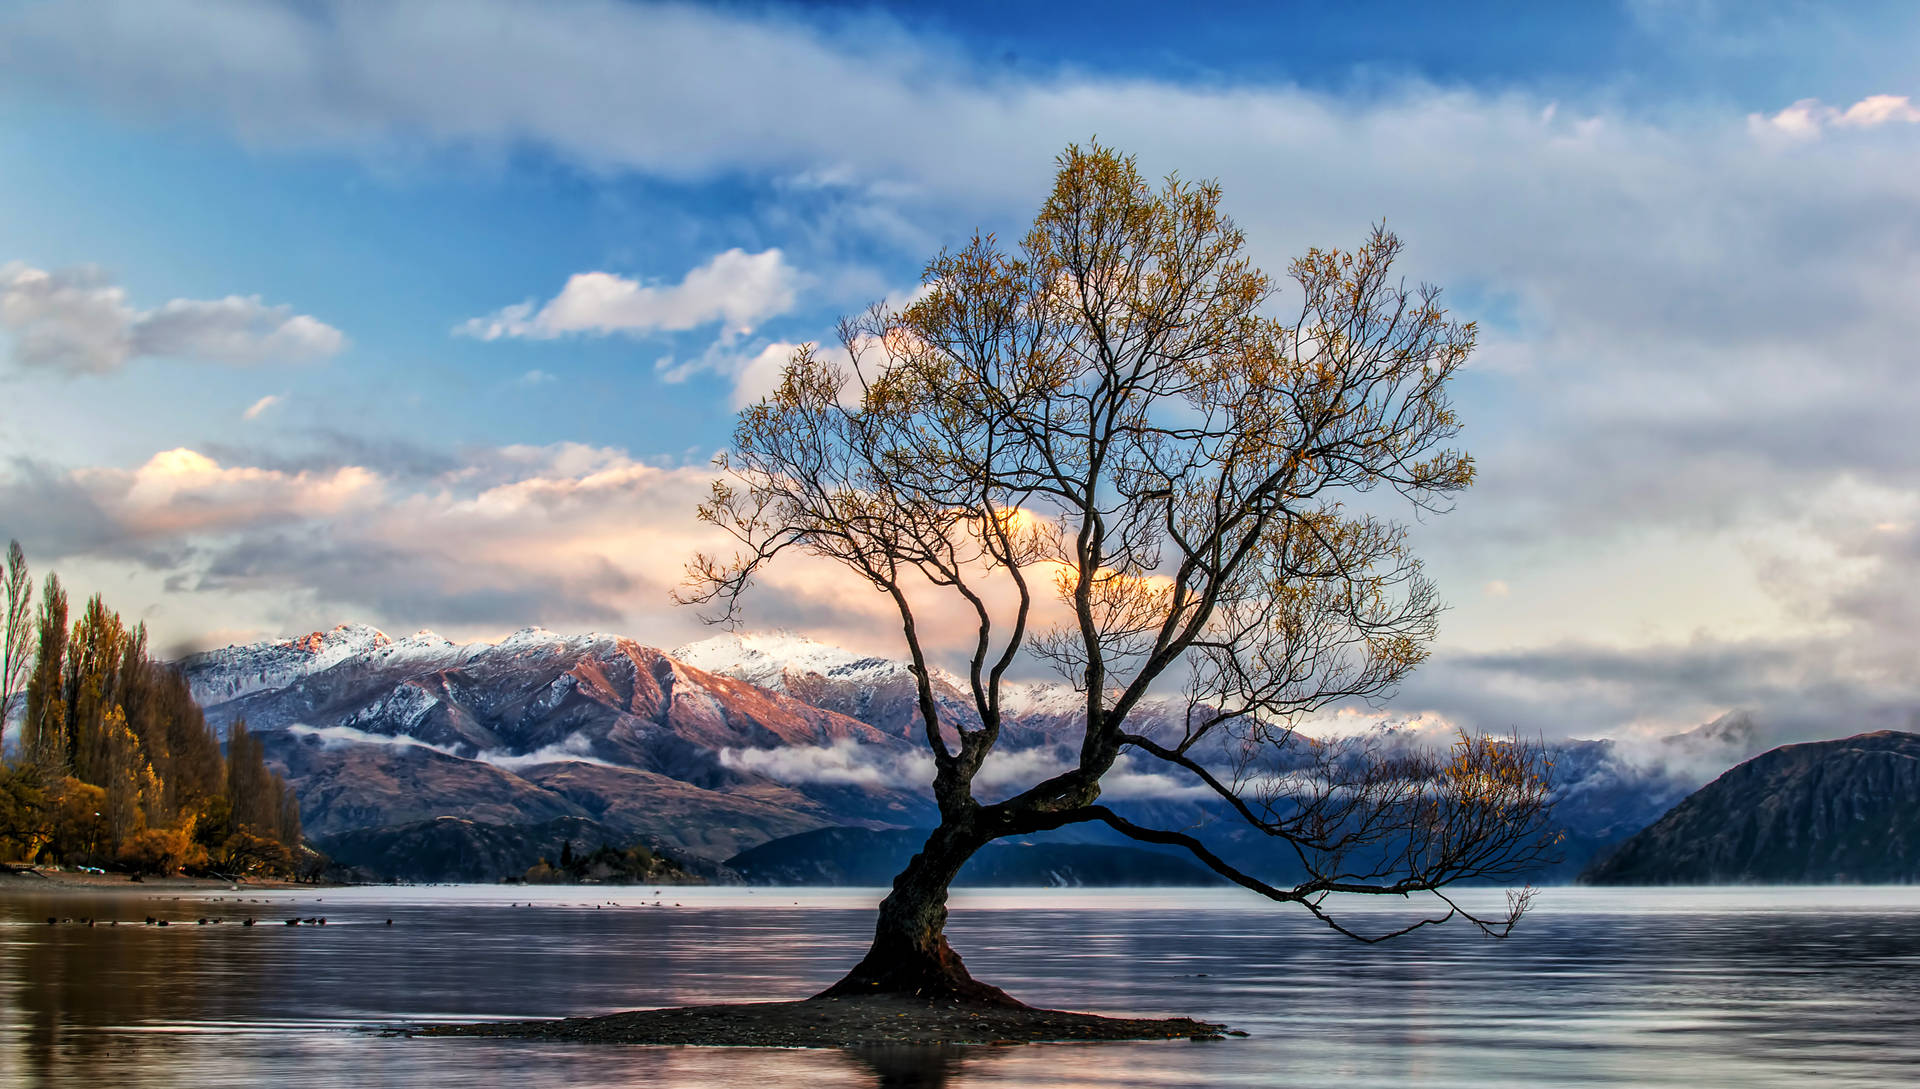 Lake Wanaka New Zealand Background